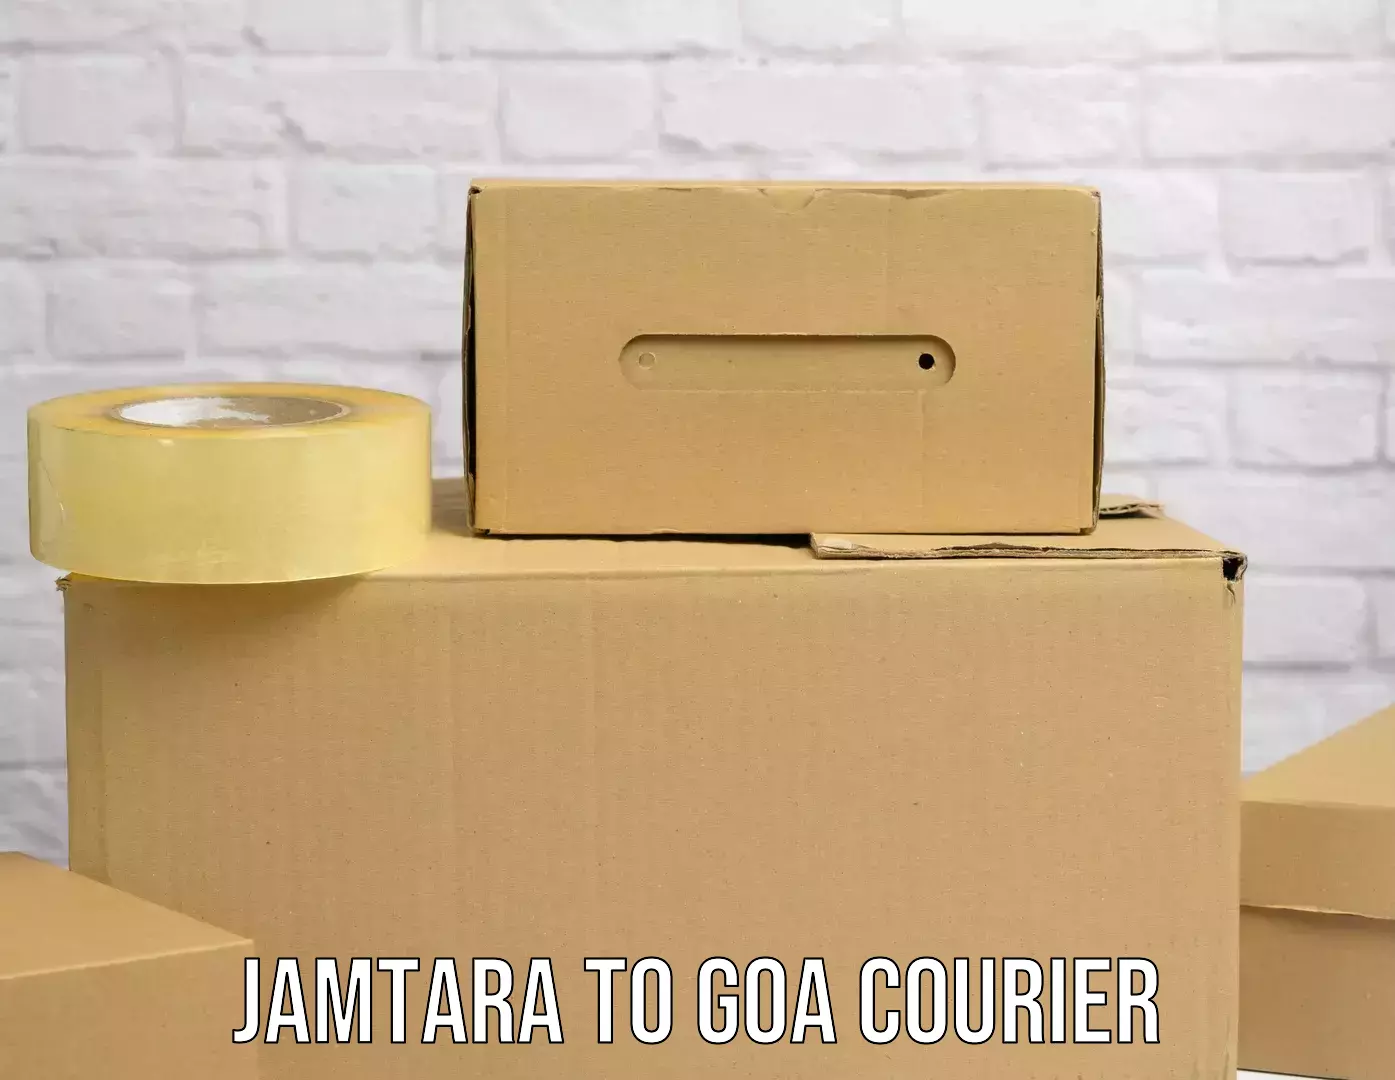 Advanced parcel tracking Jamtara to Panjim